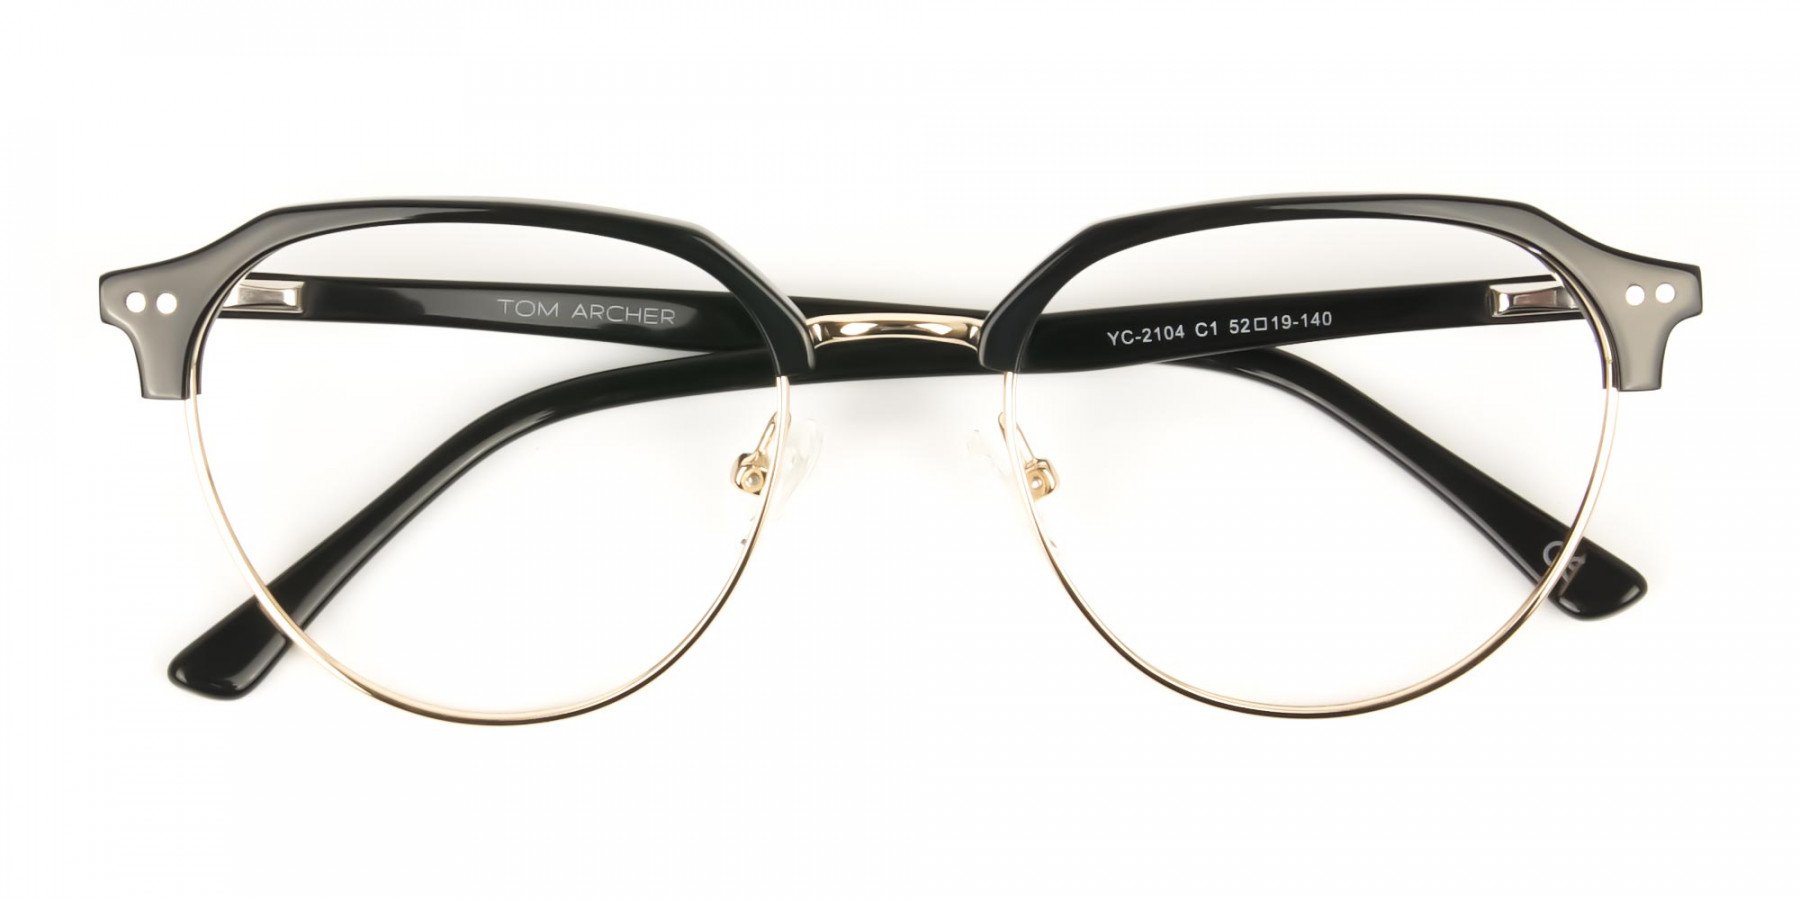 Black-Browline-wayfarer-Glasses-Frames-1